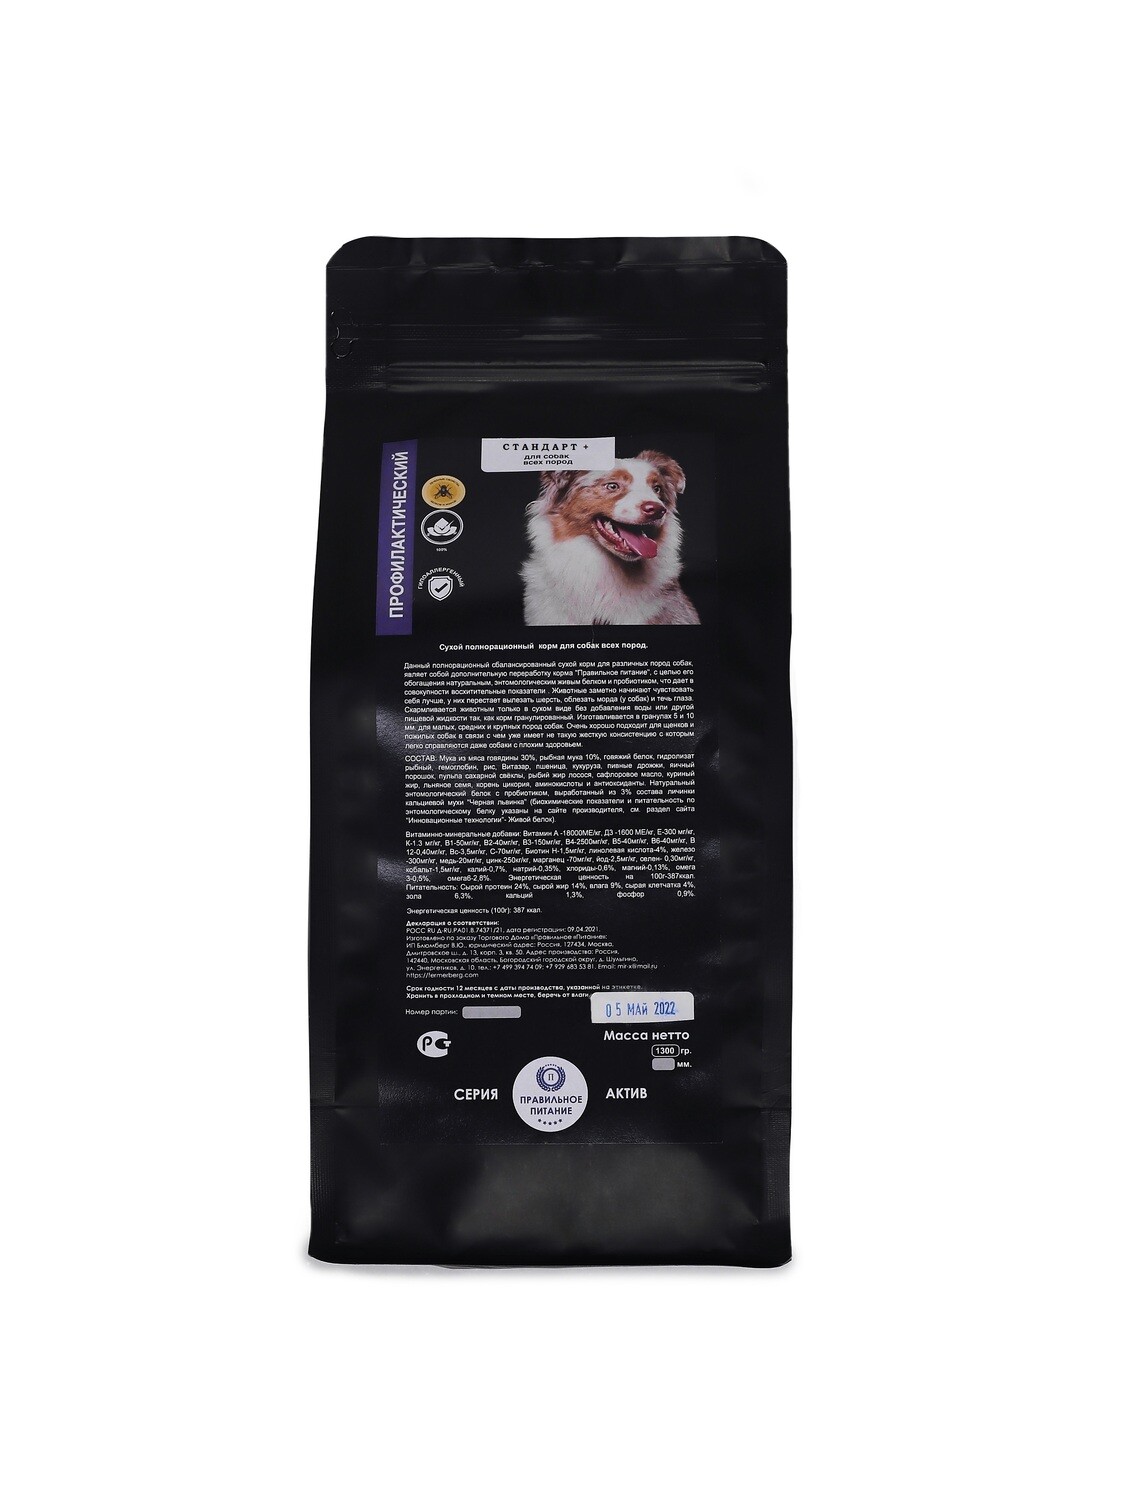 Сухой корм для всех пород собак -"Стандарт +", стоимость за упаковку - 1,5 кг.